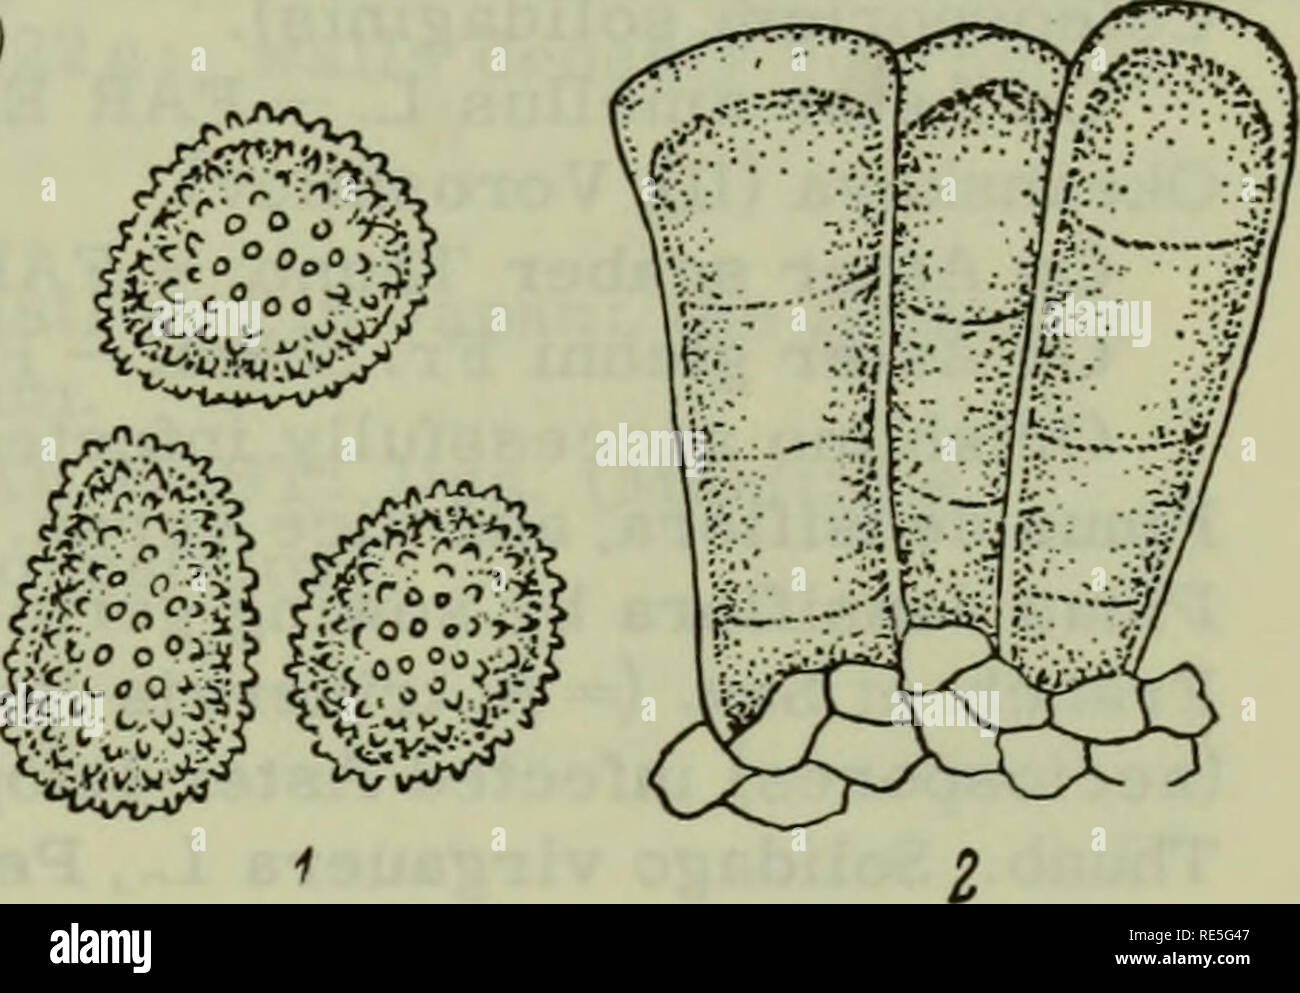 . Plantes cryptogamique de l'URSS. Sporovykh : flore (ESSS). Les plantes. [311). La figure 107. Coleosporium horianum P.Henn. sur Codonopsis lanceolata B.et H. : 1 -les urédospores ; 2 - les téliospores ; &Lt ; 600. (Oiig.) Figure 108. Coleosporium asterum (Alimentation) Syd. sur Aster scaber Thunb. : 1 - les urédospores ; 2 - x 600 ; téleutospores. (Orig.) sur composées 18. Coleosporium asterum (Alimentation) Syd., Ann. mycol. XII, 1914, p. 109 ; Syd., Monogr. Ured, III, 1915, p. 600 ; Tranzschel, Consp. Ured. URSS, Moscou, 1939, p. 378. Syn. : Stichopsora asterum. Régime alimentaire, Engler's Bot. Jahrb. XXVII, 1899, S. 566 ; Sacc, Sylloge, XVI Banque D'Images